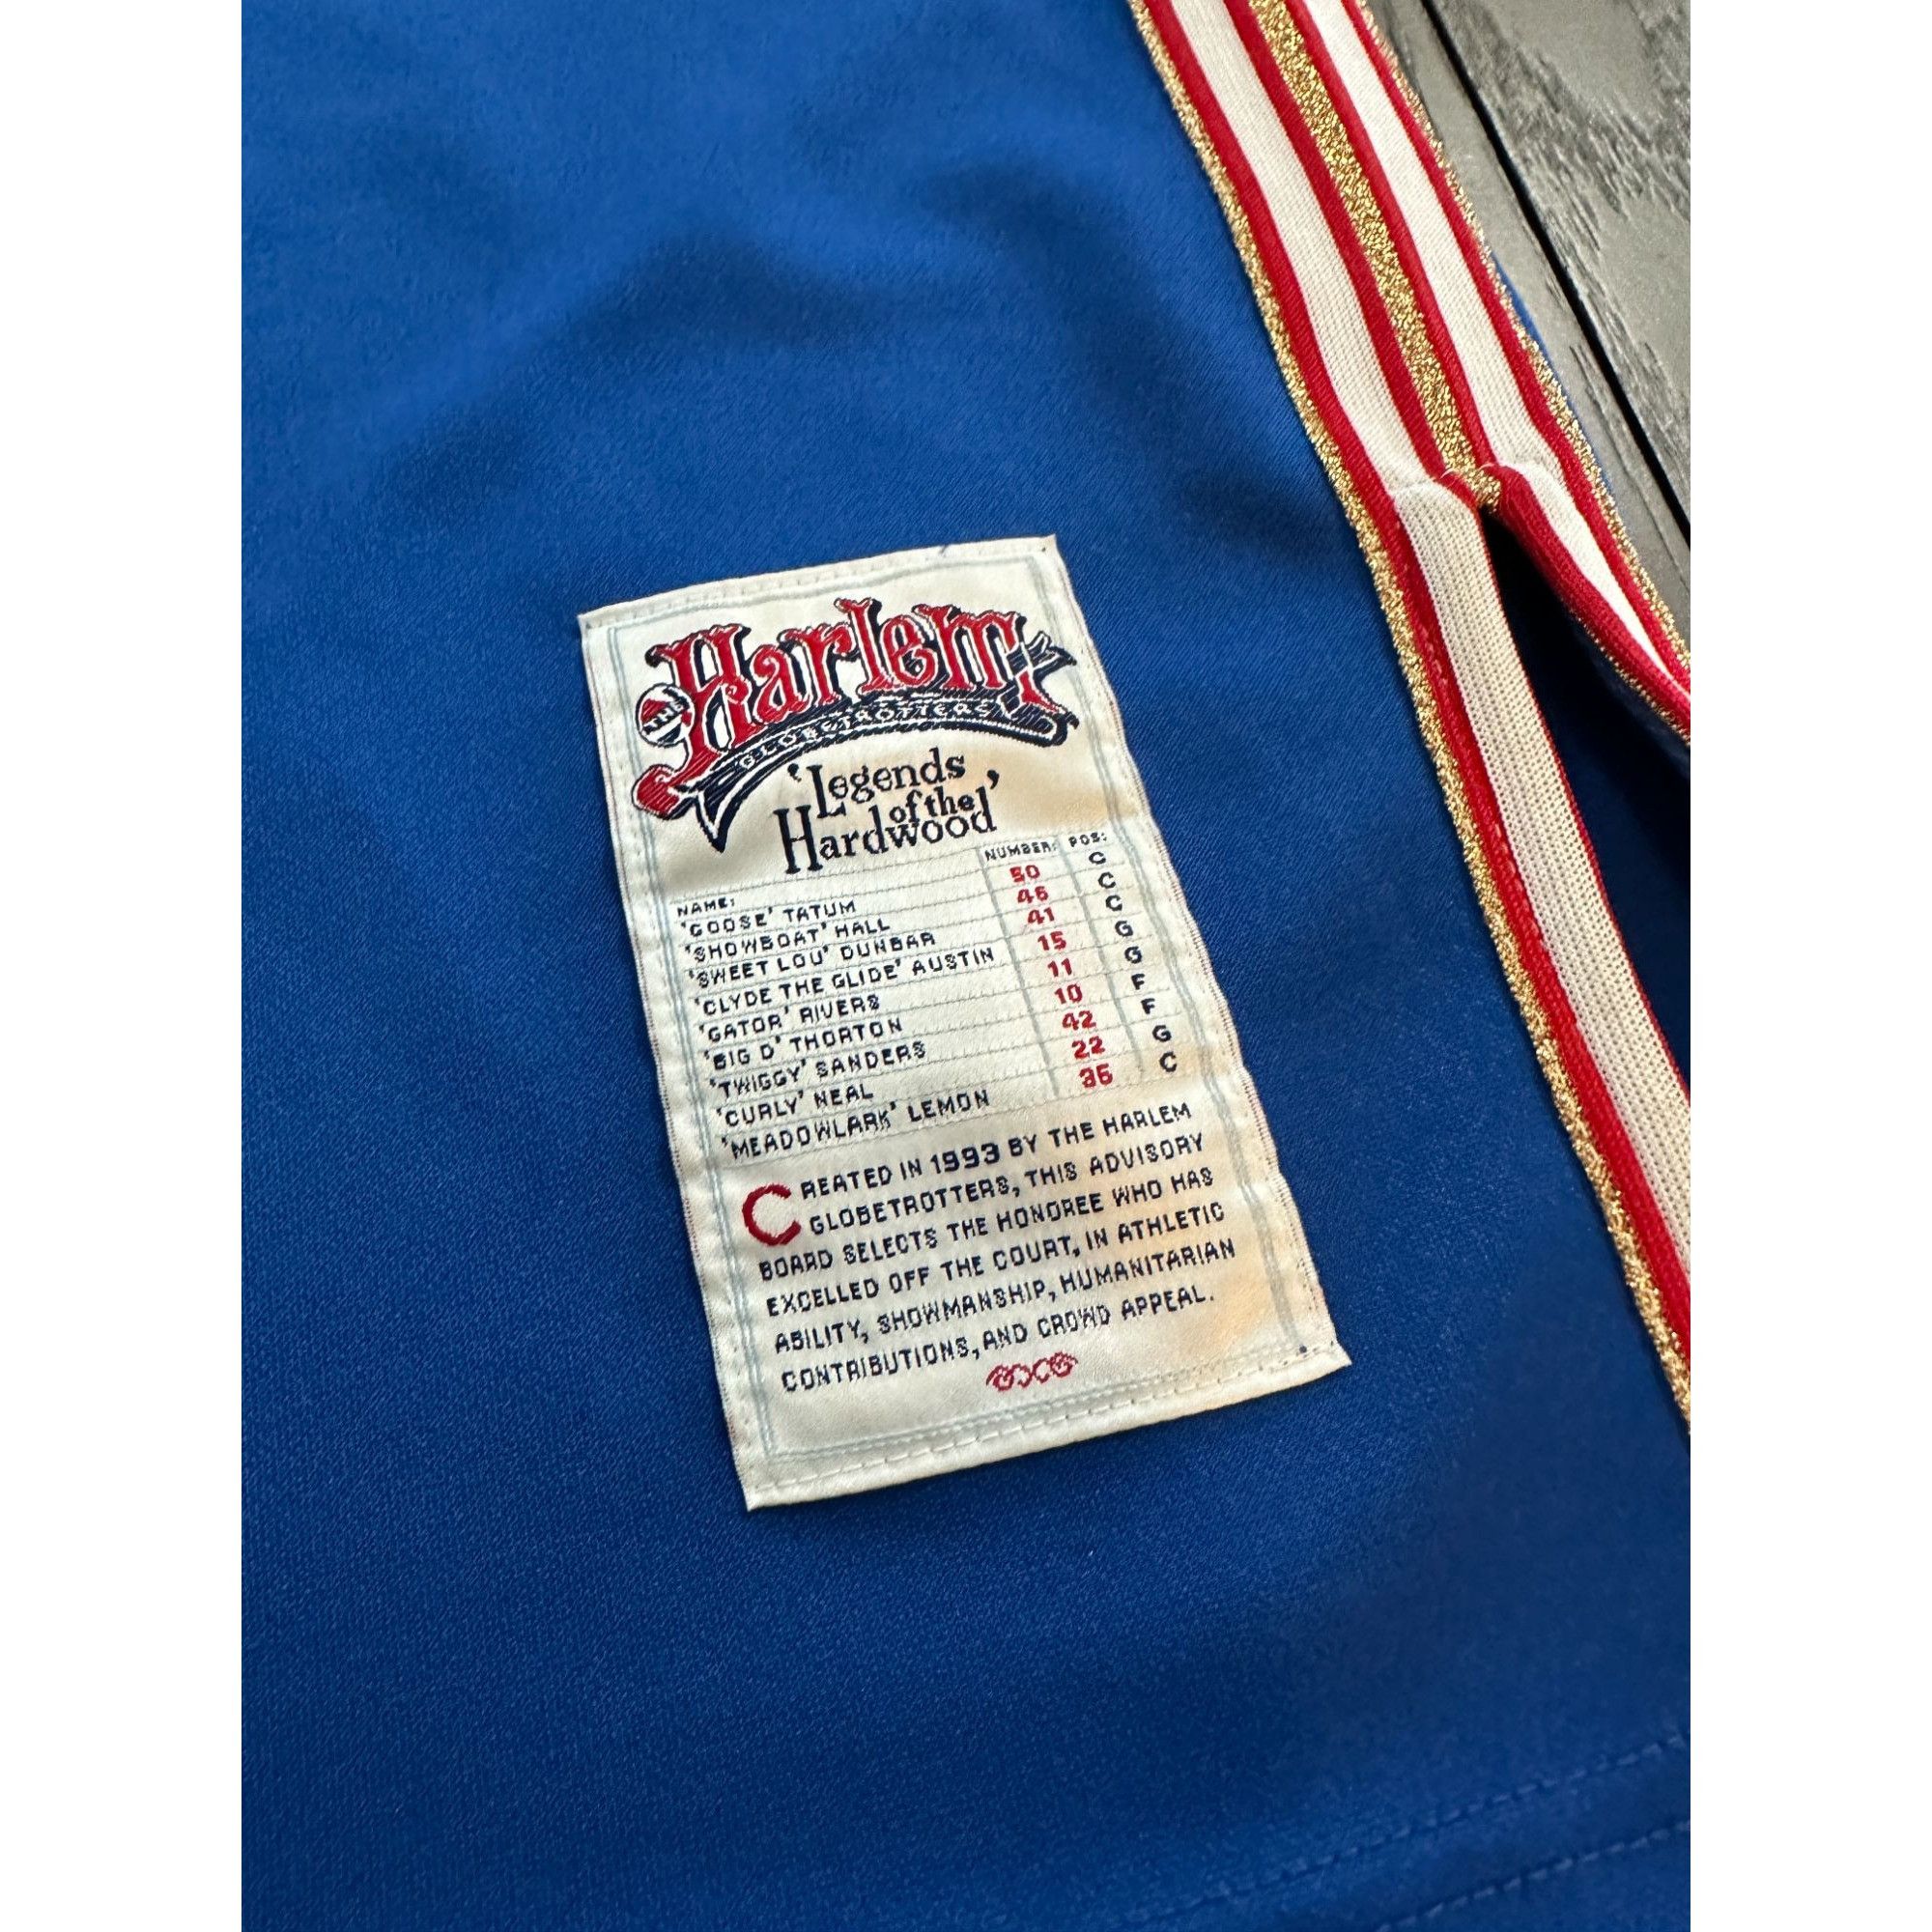 Fubu Harlem Globetrotters jersey Platinum Fubu 75th 3XL Size US XXL / EU 58 / 5 - 2 Preview